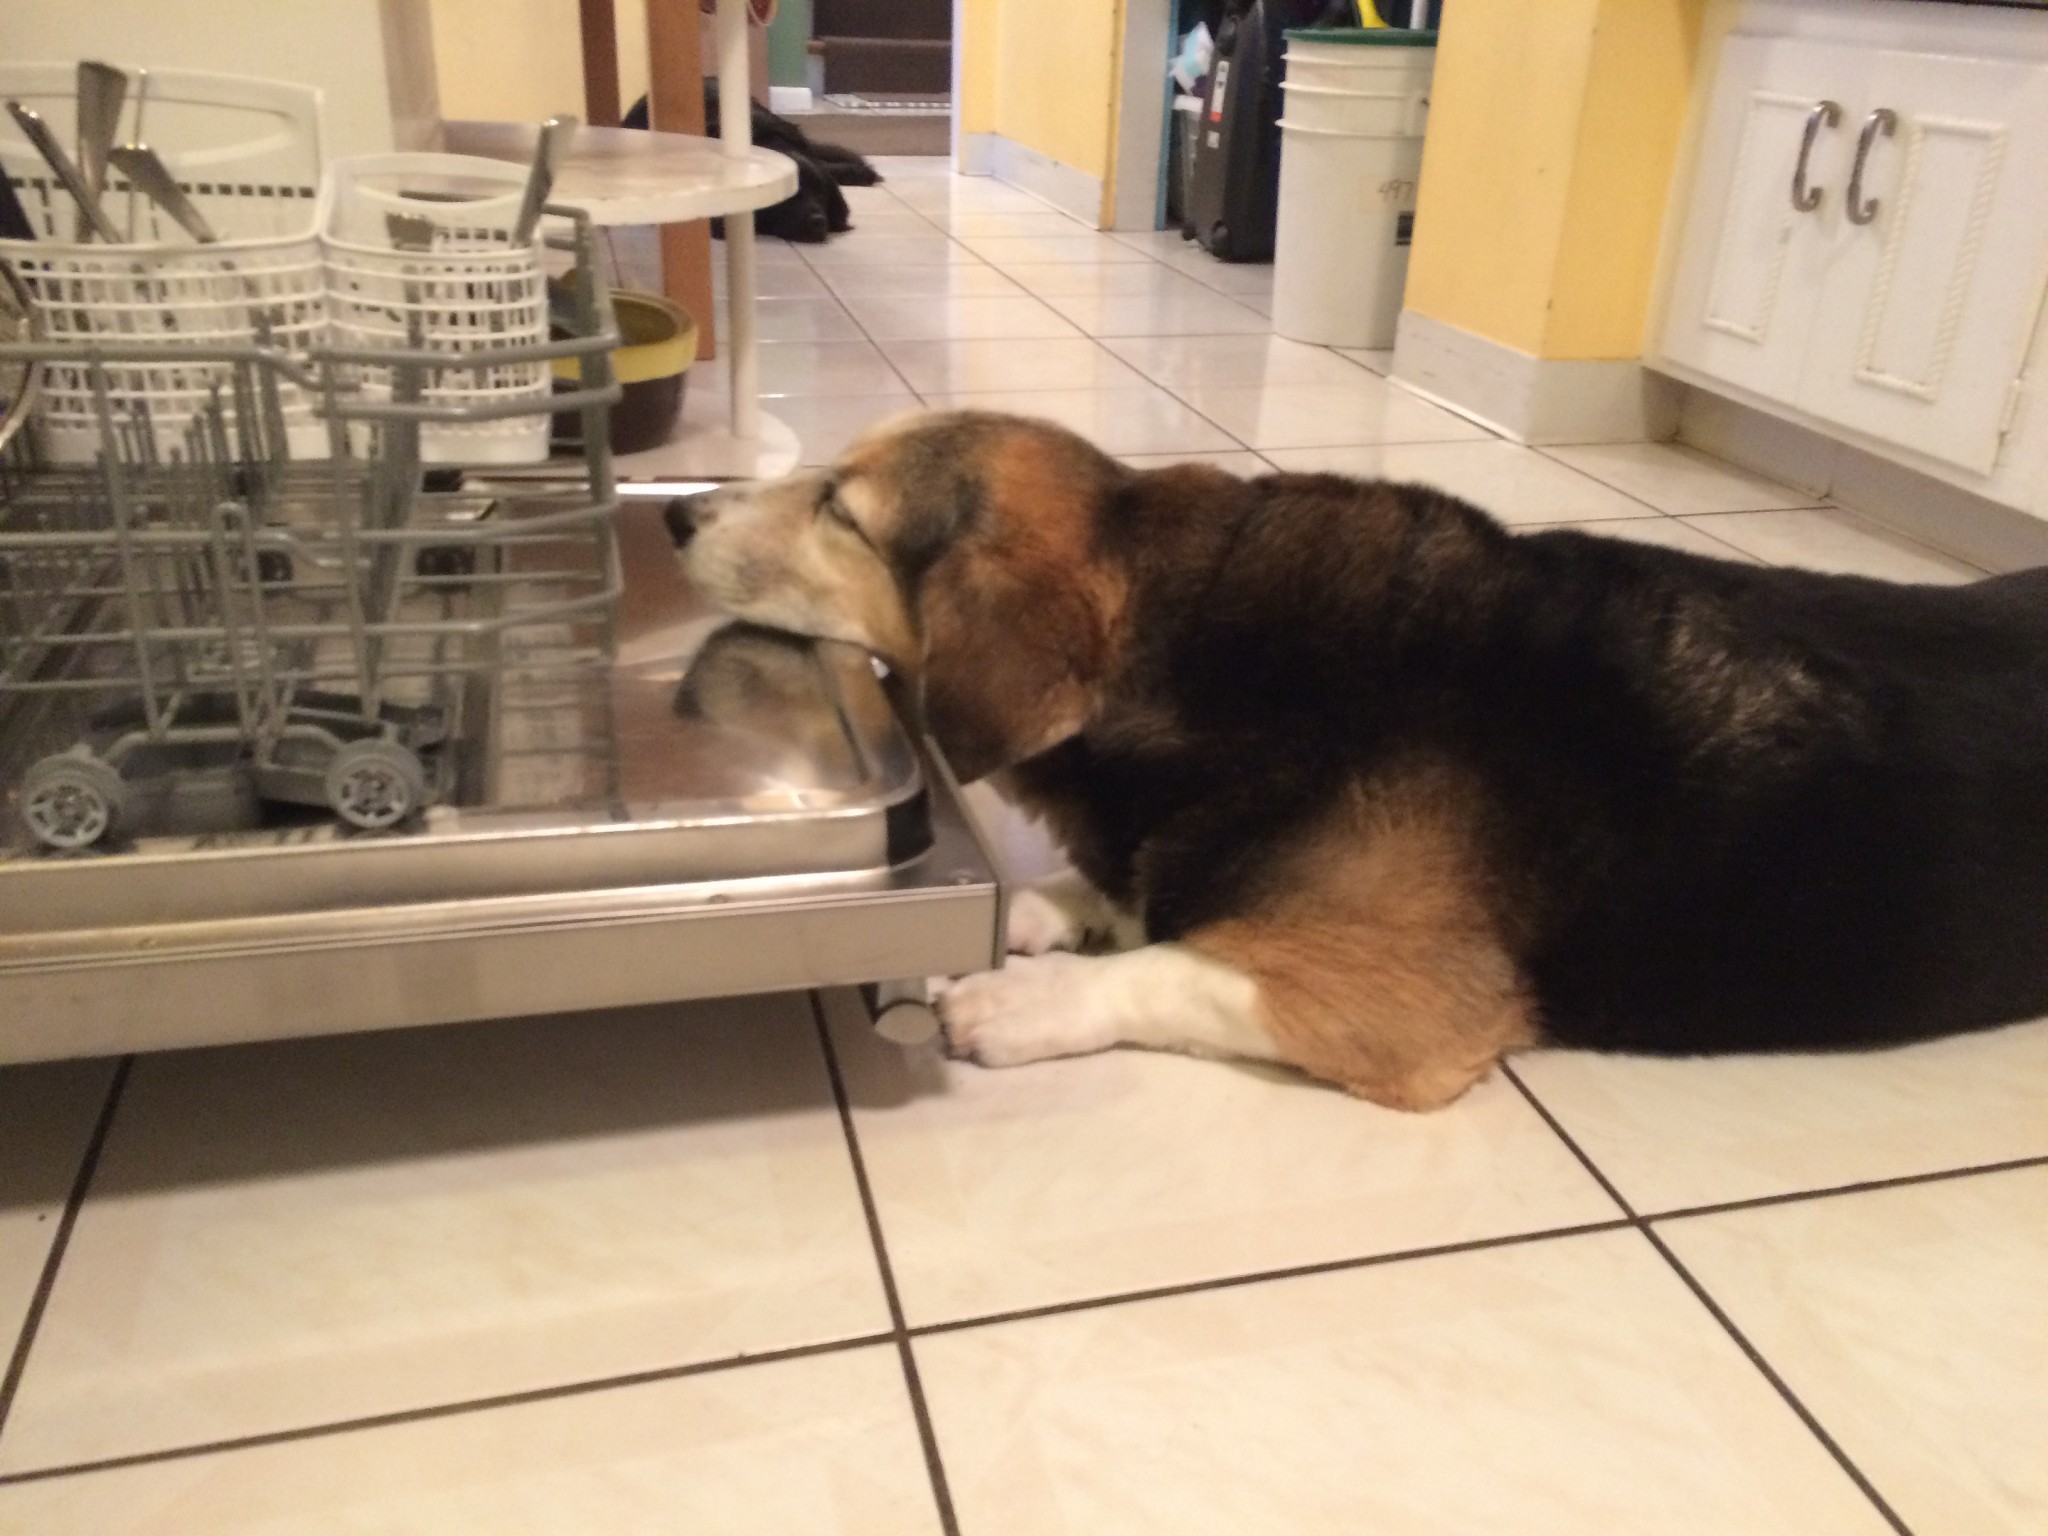 Phoebe sleeping on dishwasher